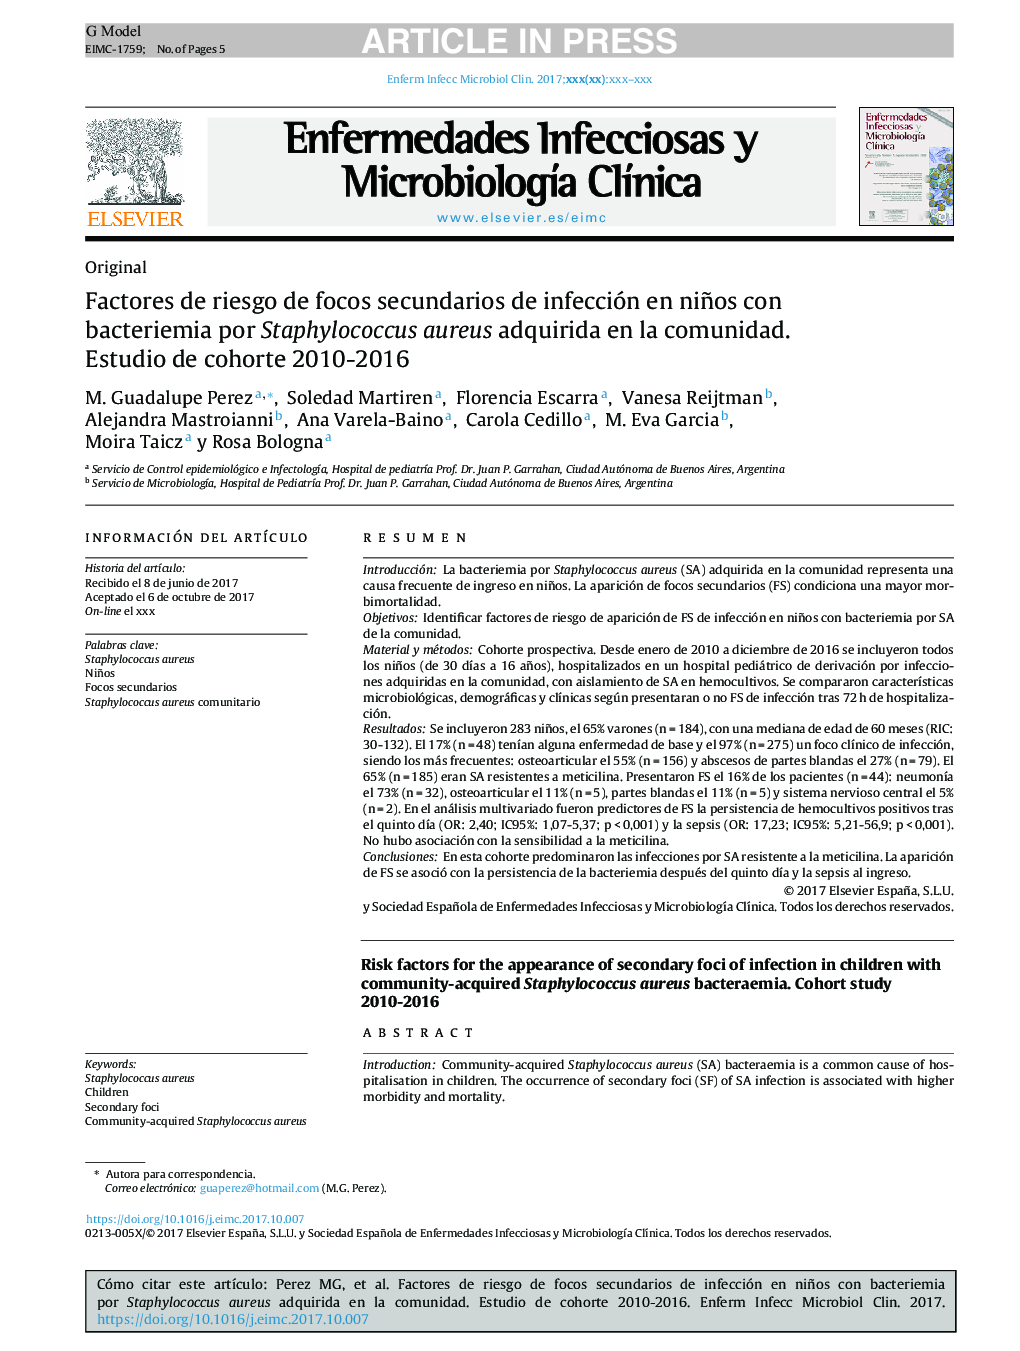 عوامل خطر زخم ثانویه عفونت در کودکان + با باکتریایی به علت استافیلوکوکوس اورئوس به دست آمده در جامعه. مطالعه کوهورت 2010-2016